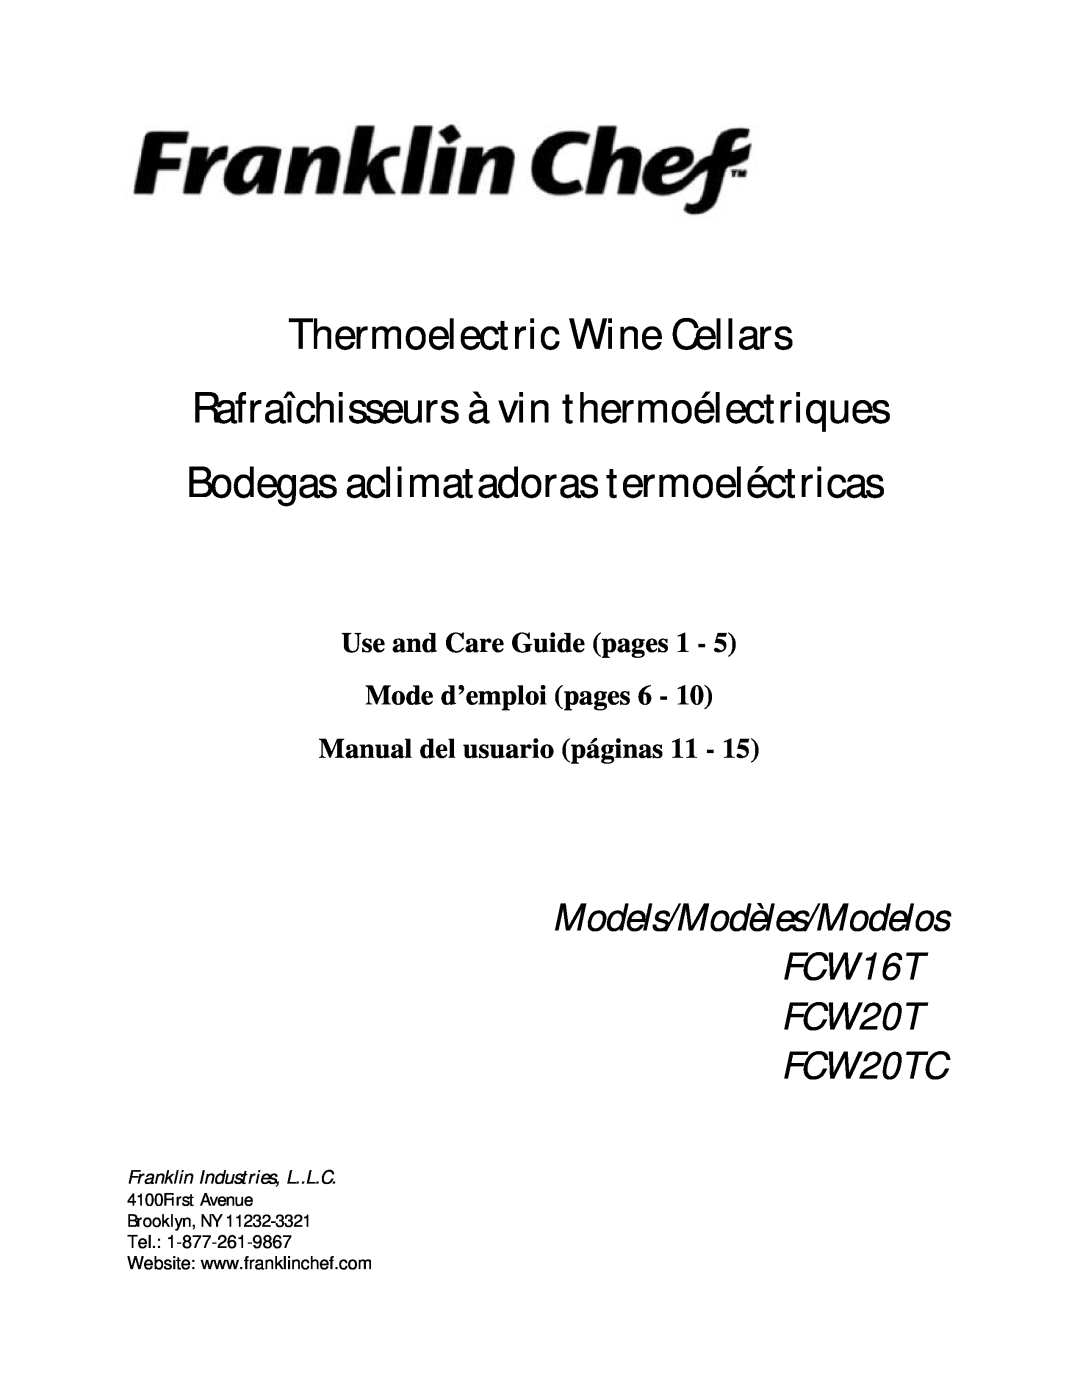 Franklin Industries, L.L.C FCW20TC, FCW16T manual Thermoelectric Wine Cellars, Rafraîchisseurs à vin thermoélectriques 